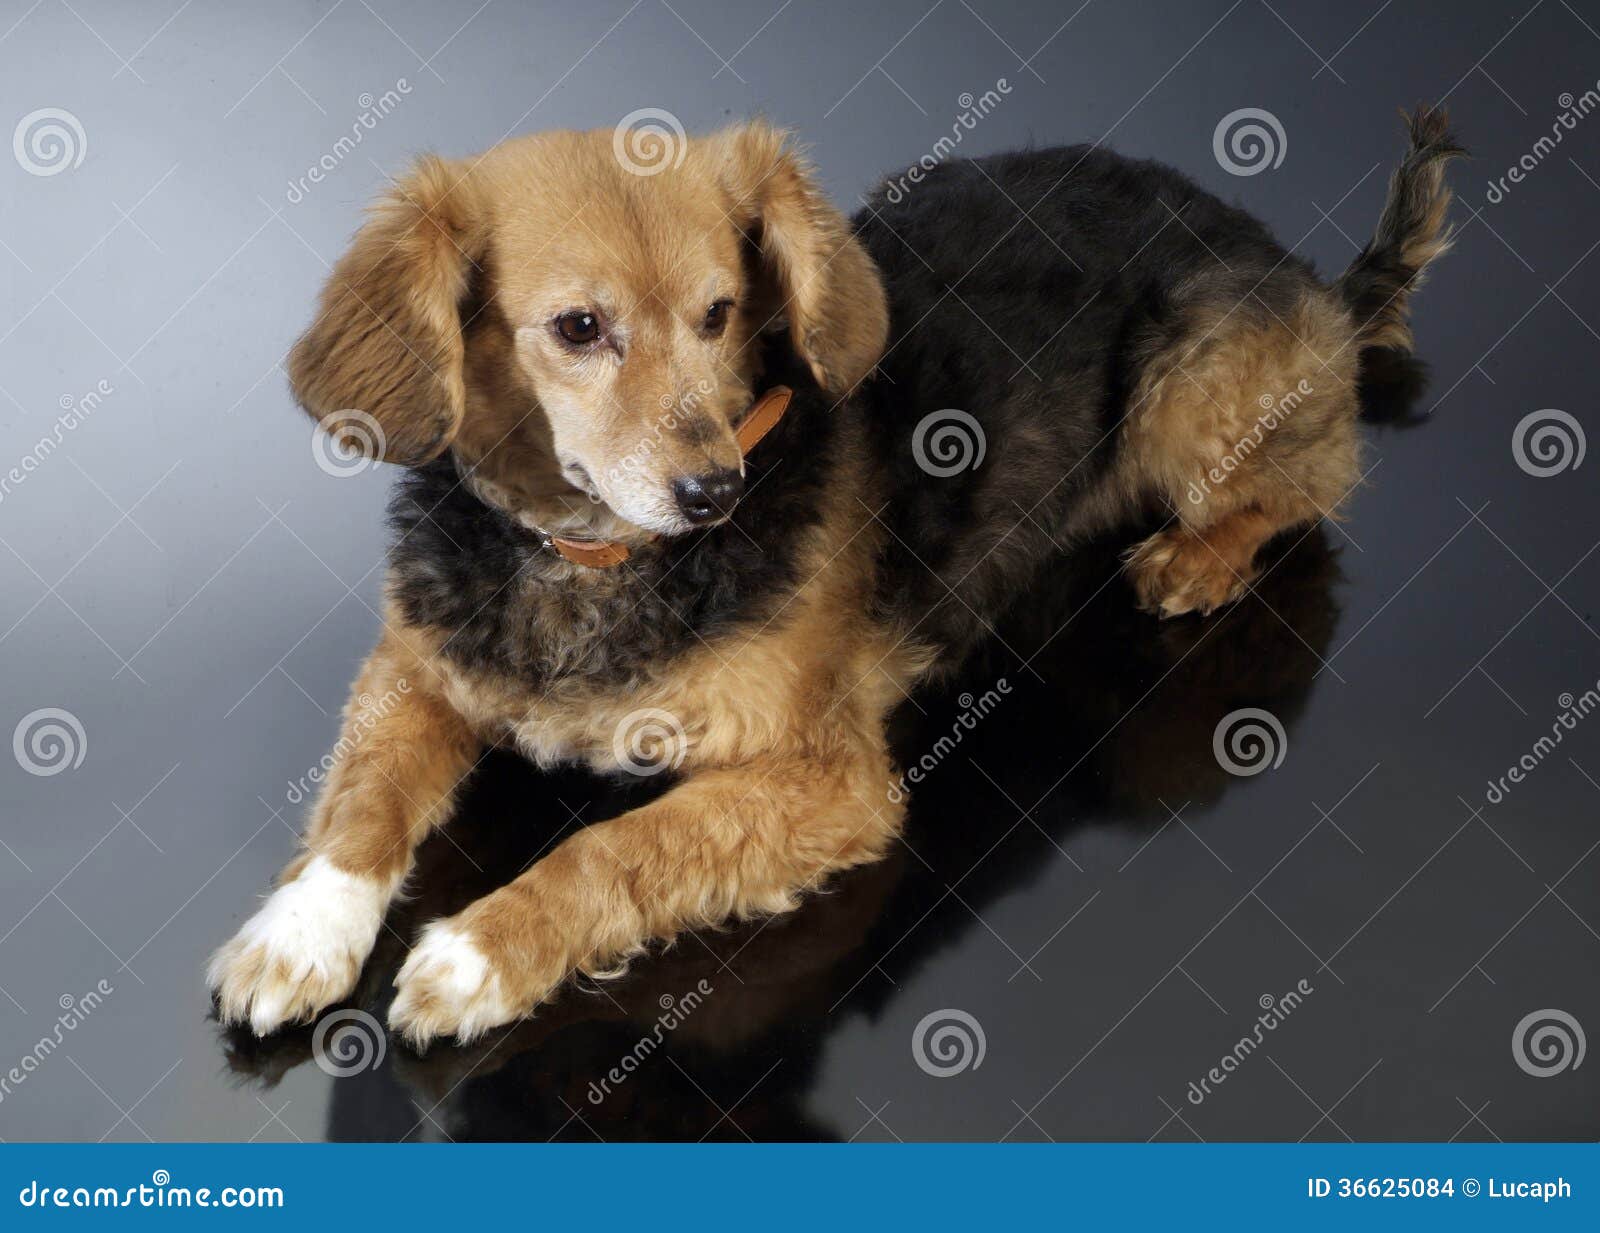 Tan染黑嘴杂种狗大型猛犬被混合的品种狗 库存图片. 图片 包括有 巧克力, 社团, 长期, 稀释, 似犬 - 96946841